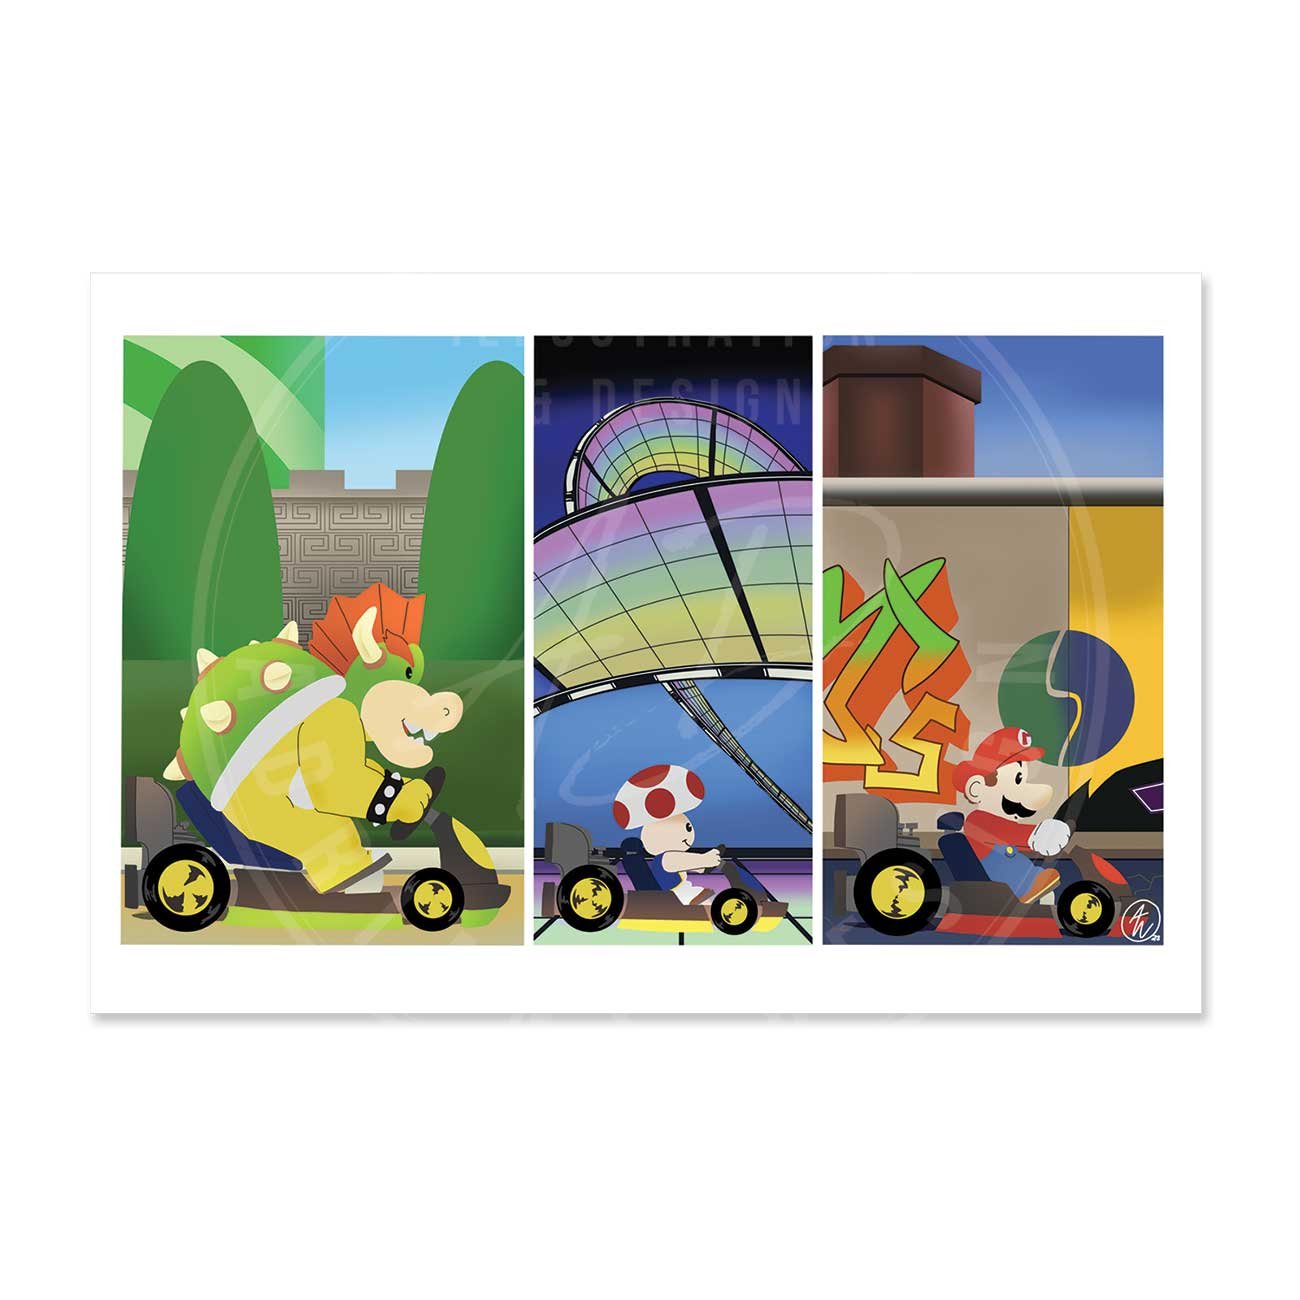 Mario Kart Poster